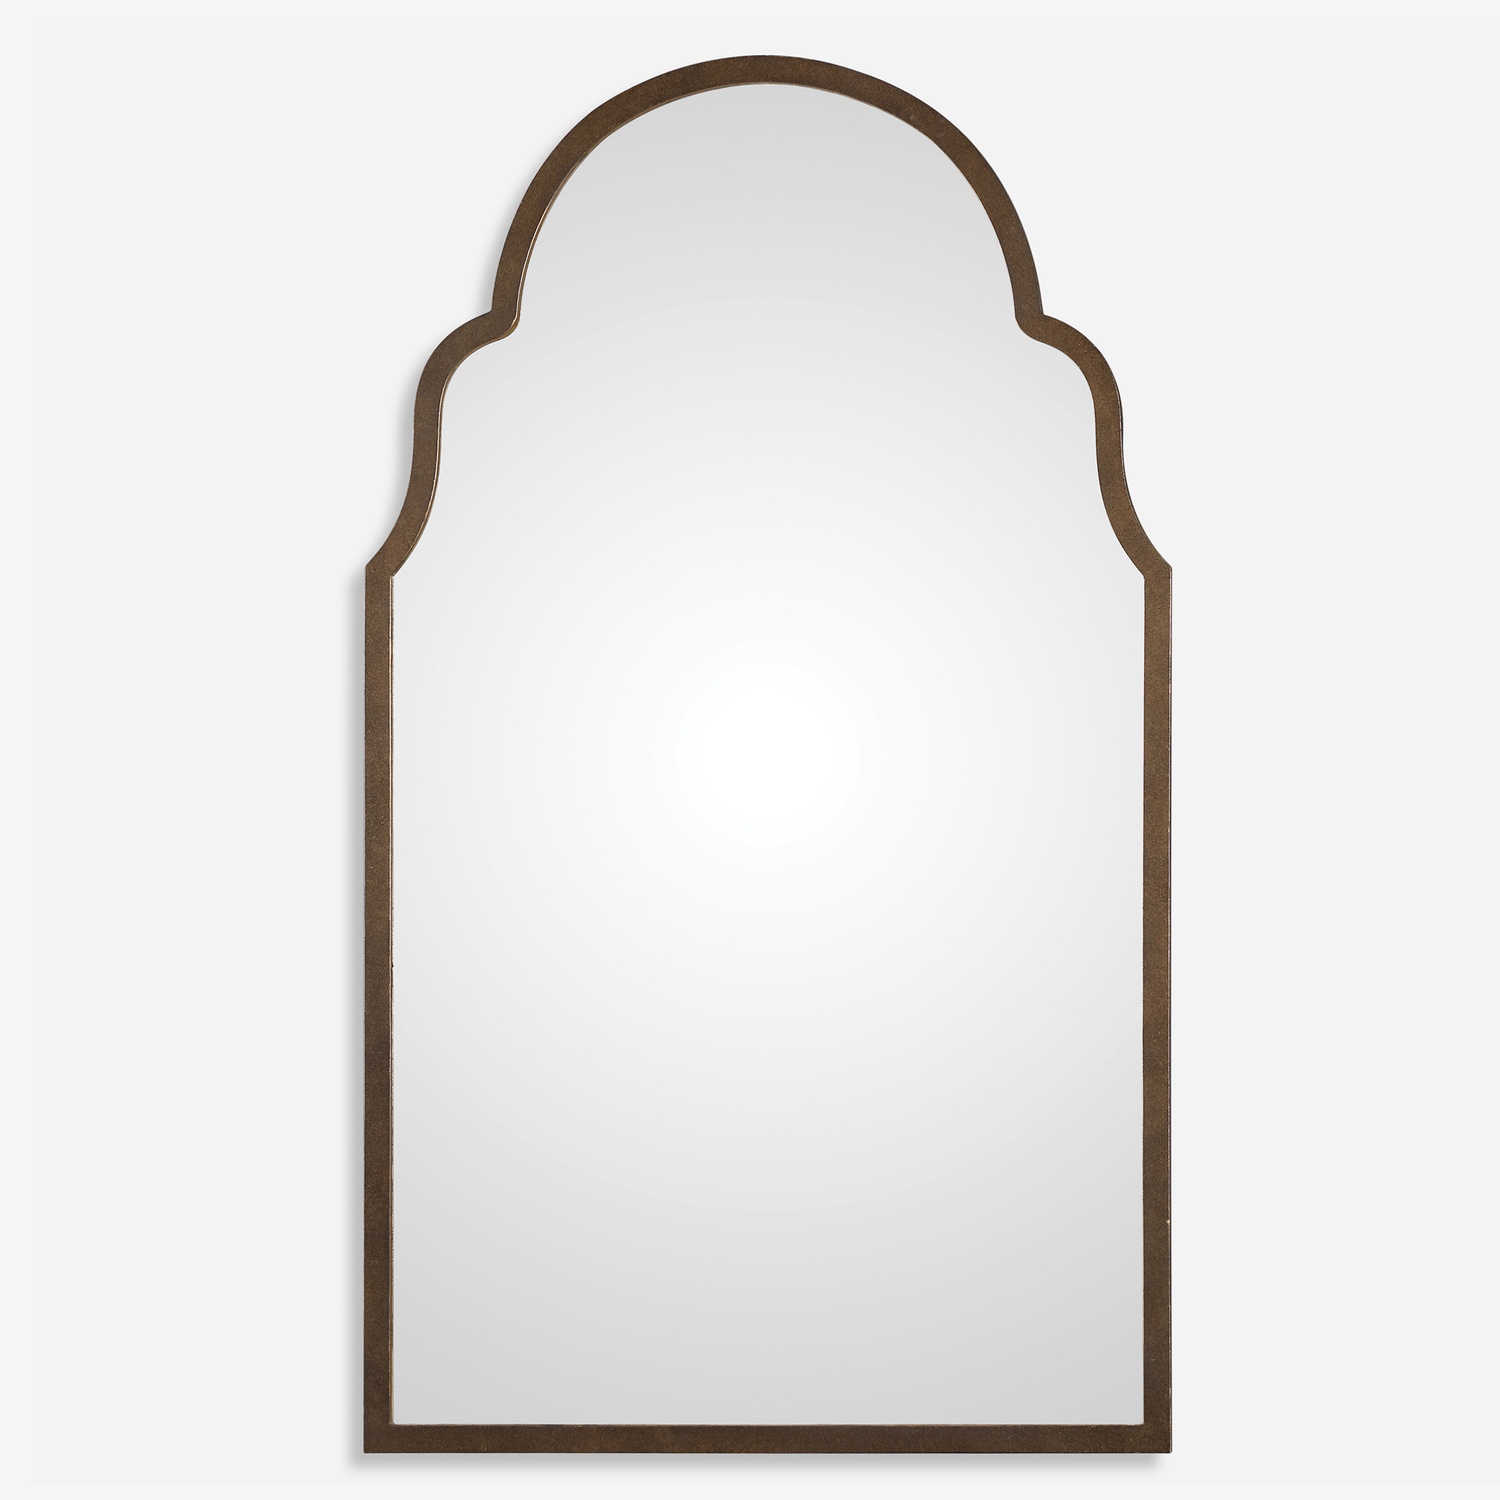 Brayden-Metal Arch Mirrors